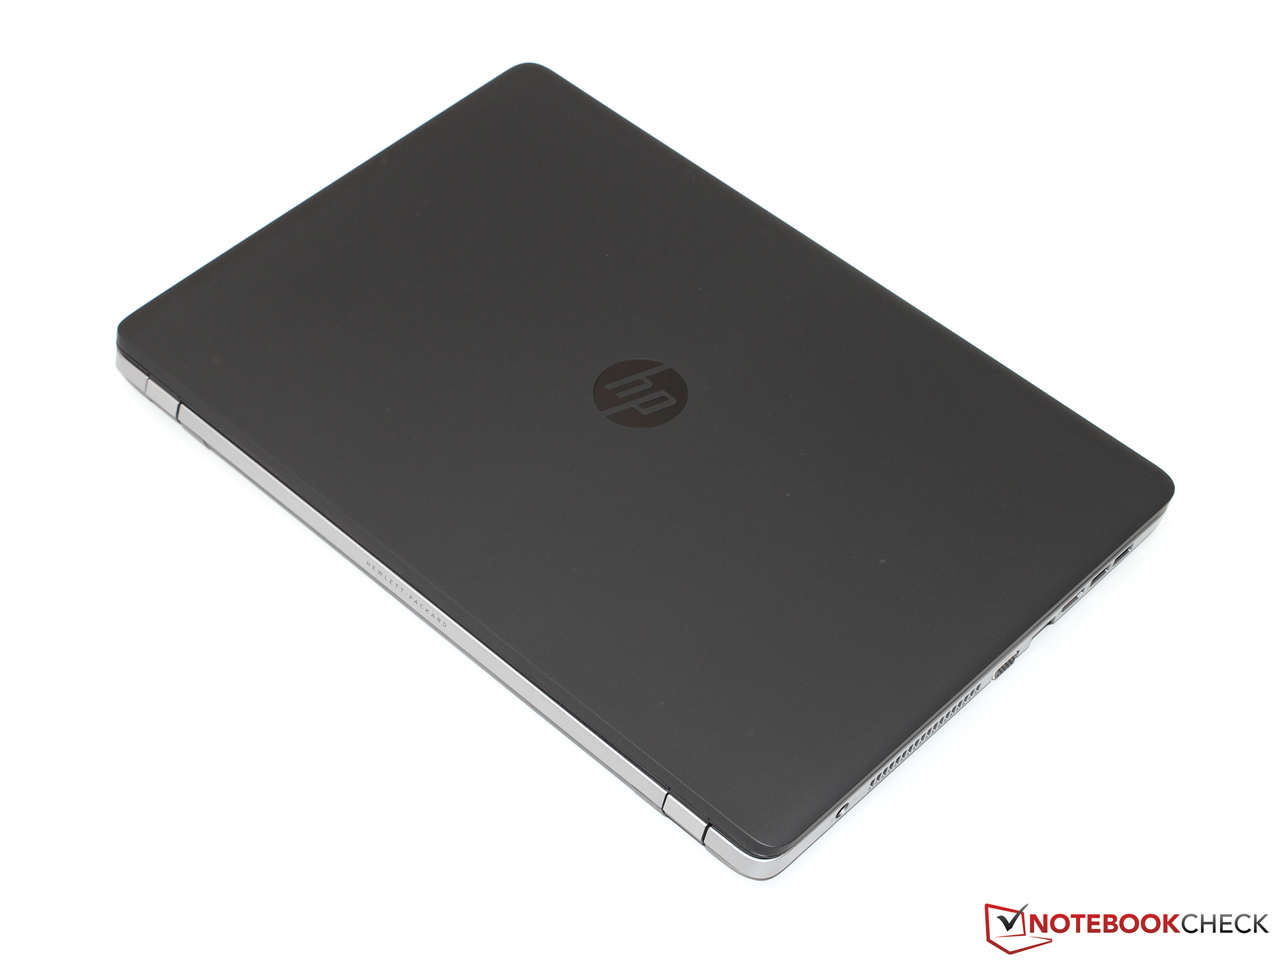 ProBook 470 G1 Notebook PC